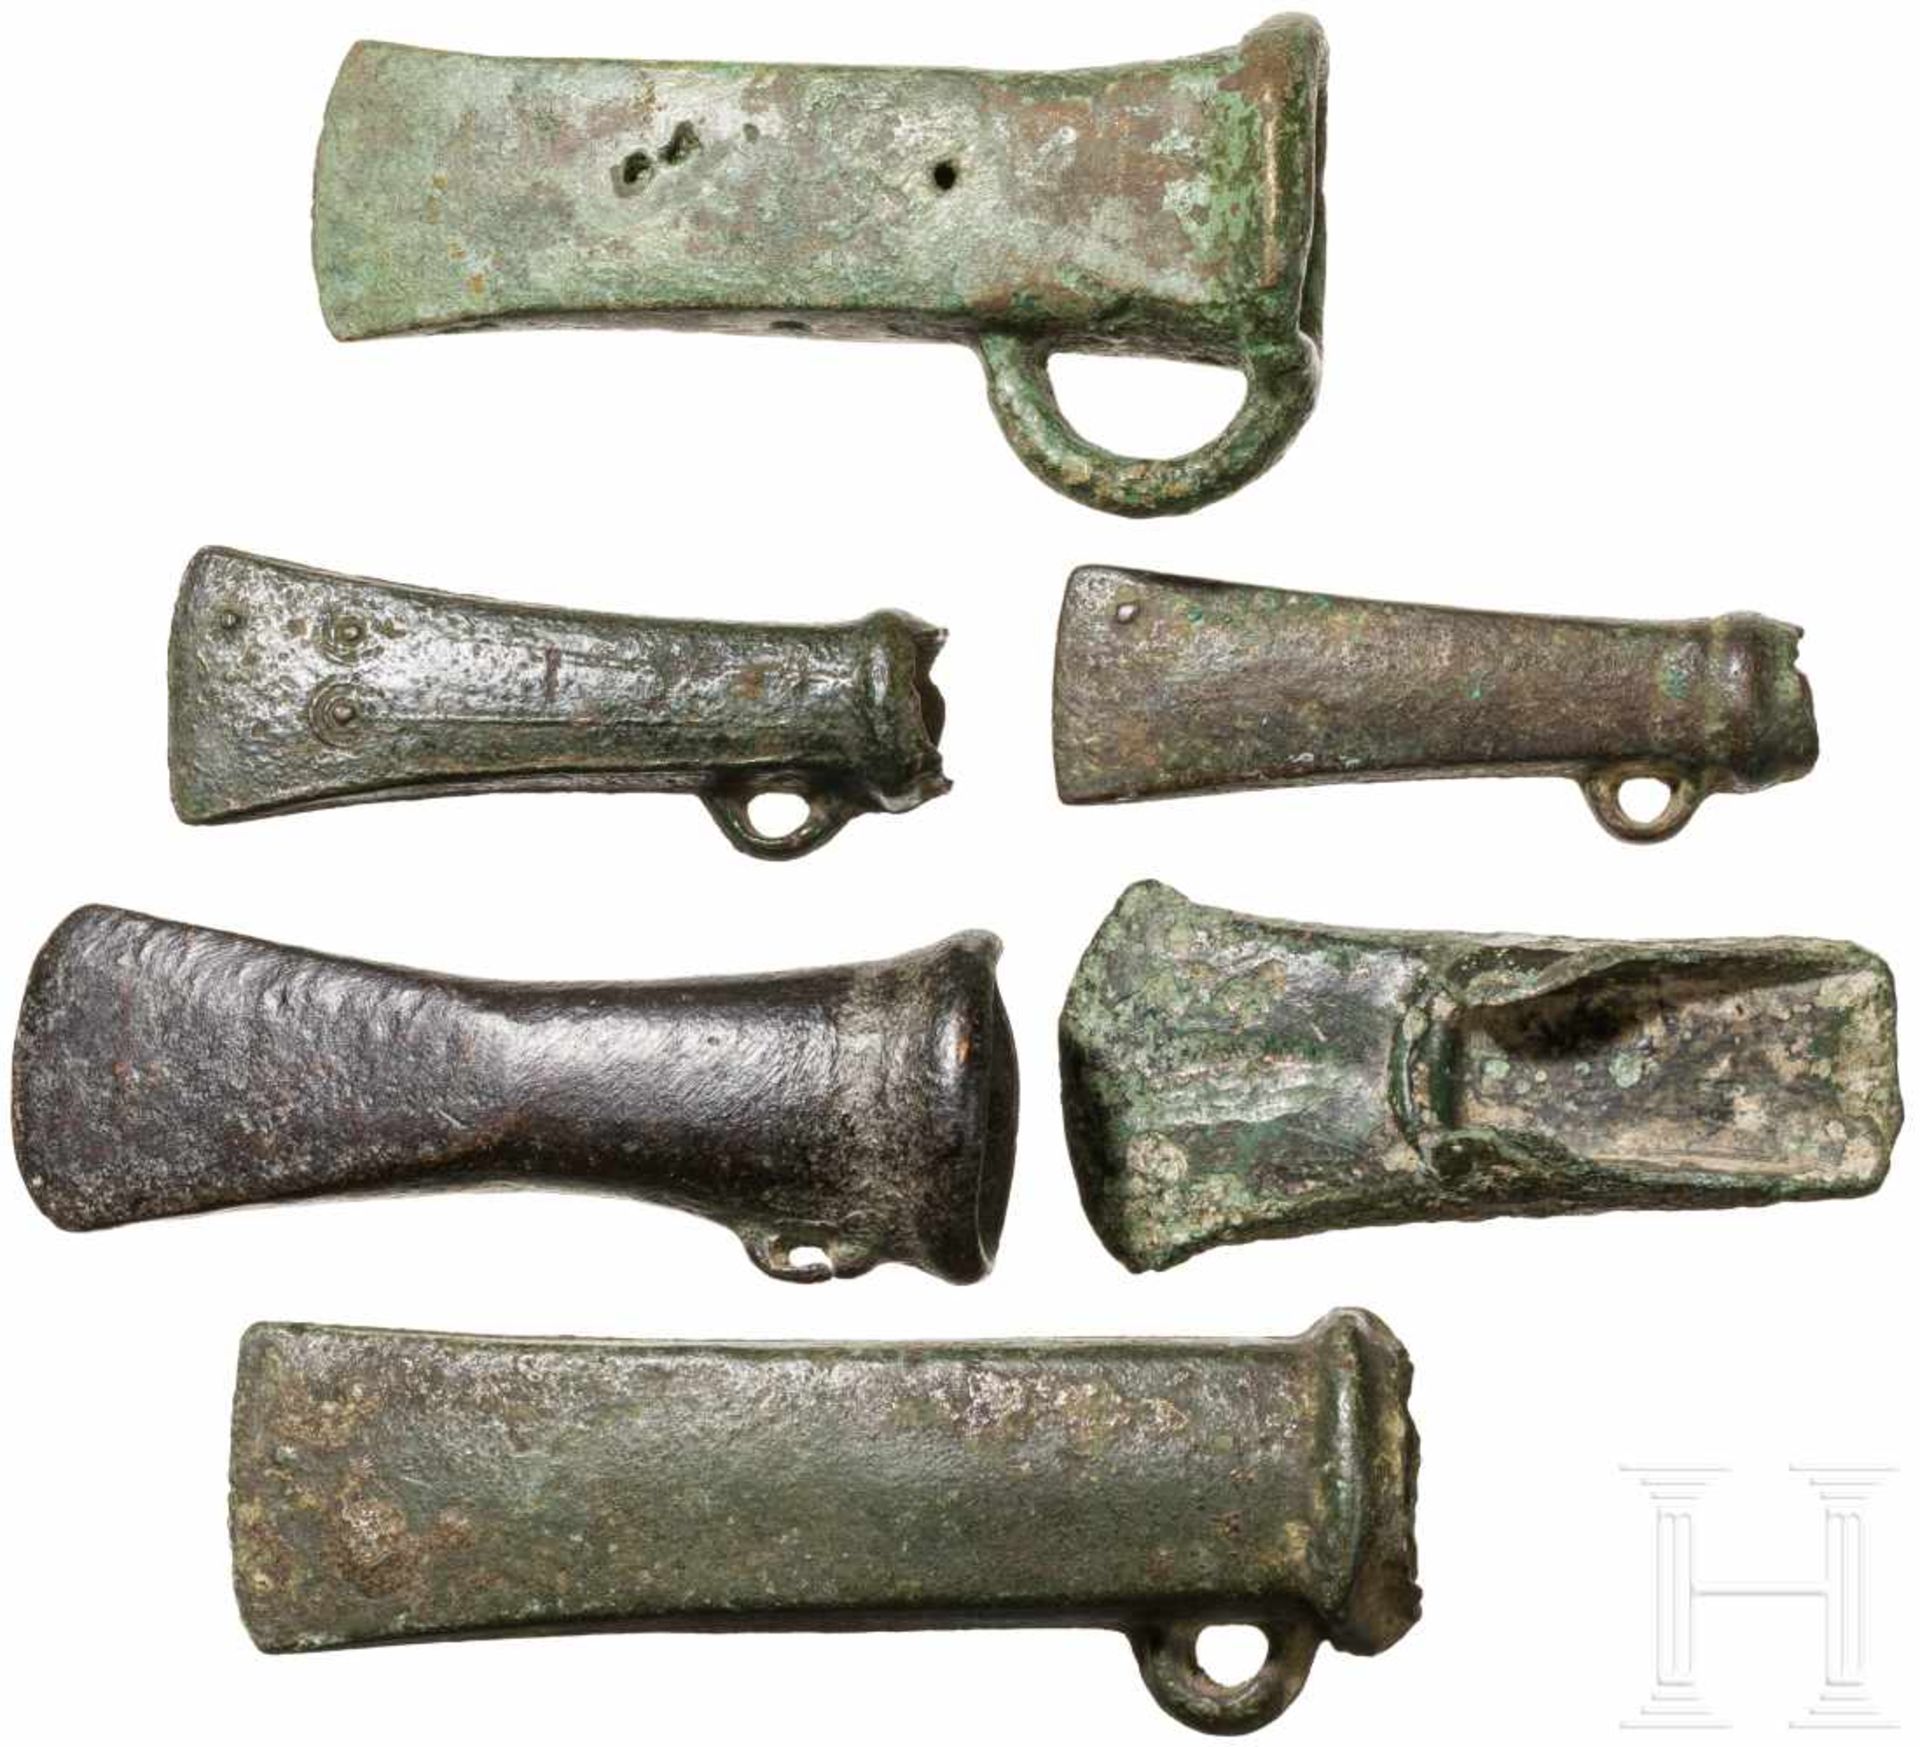 Fünf Tüllenbeile und ein Lappenbeil, Mitteleuropa, Spätbronzezeit, 1100 - 800 v. Chr.Ein kurzes, - Bild 2 aus 2